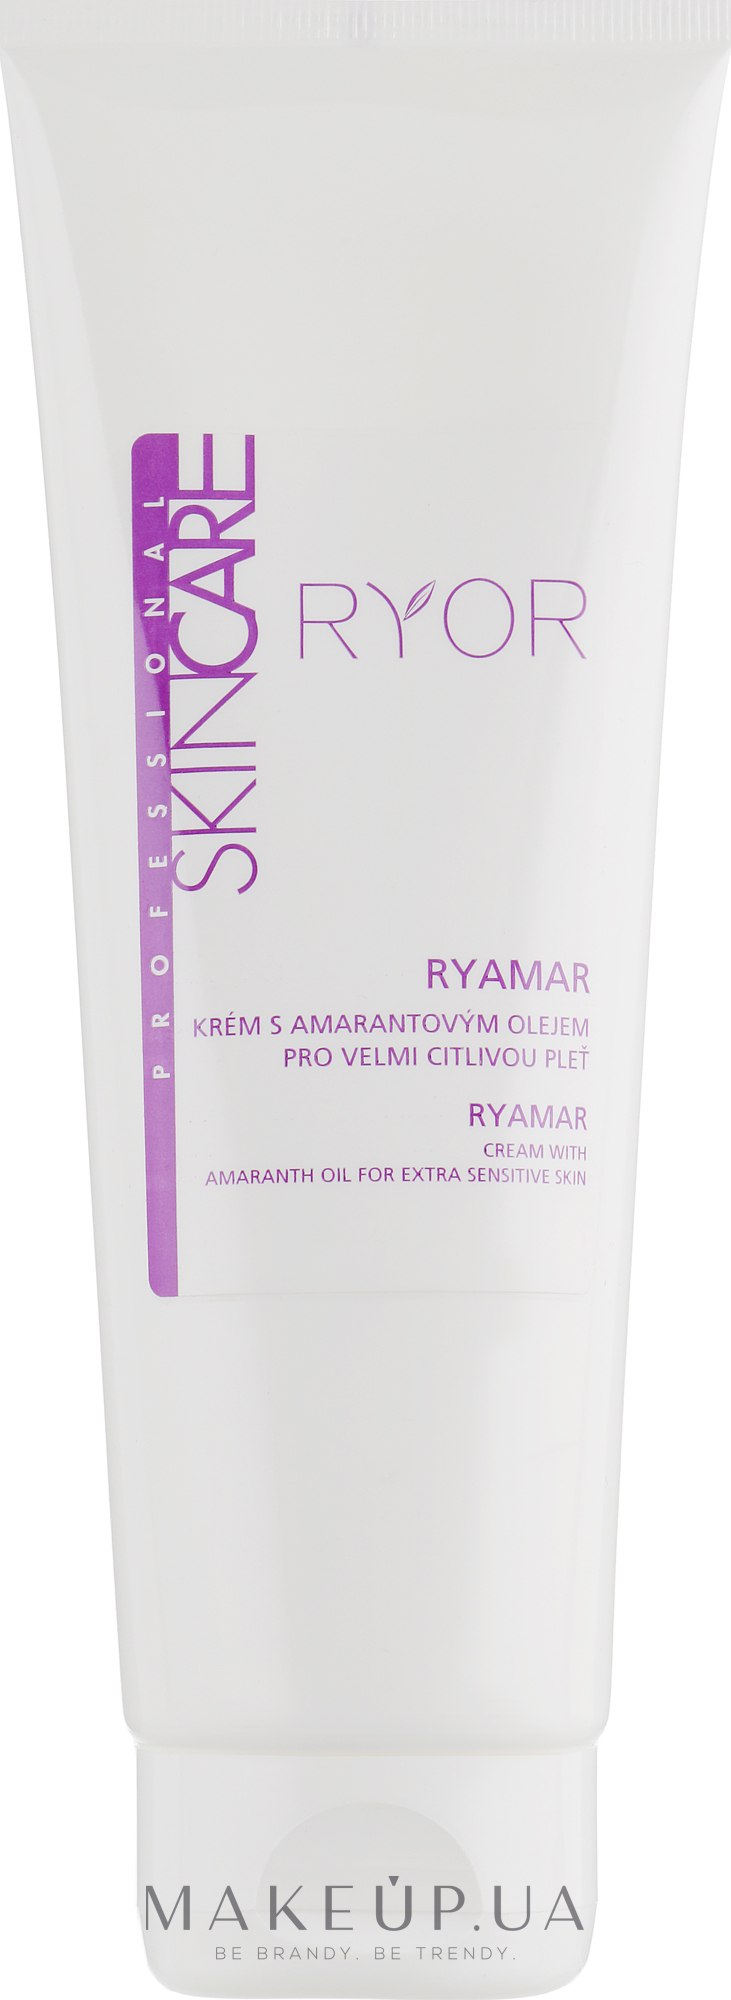 Крем з амарантовою олією для дуже чутливої шкіри - Ryor Ryamar Professional Skin Care — фото 250ml